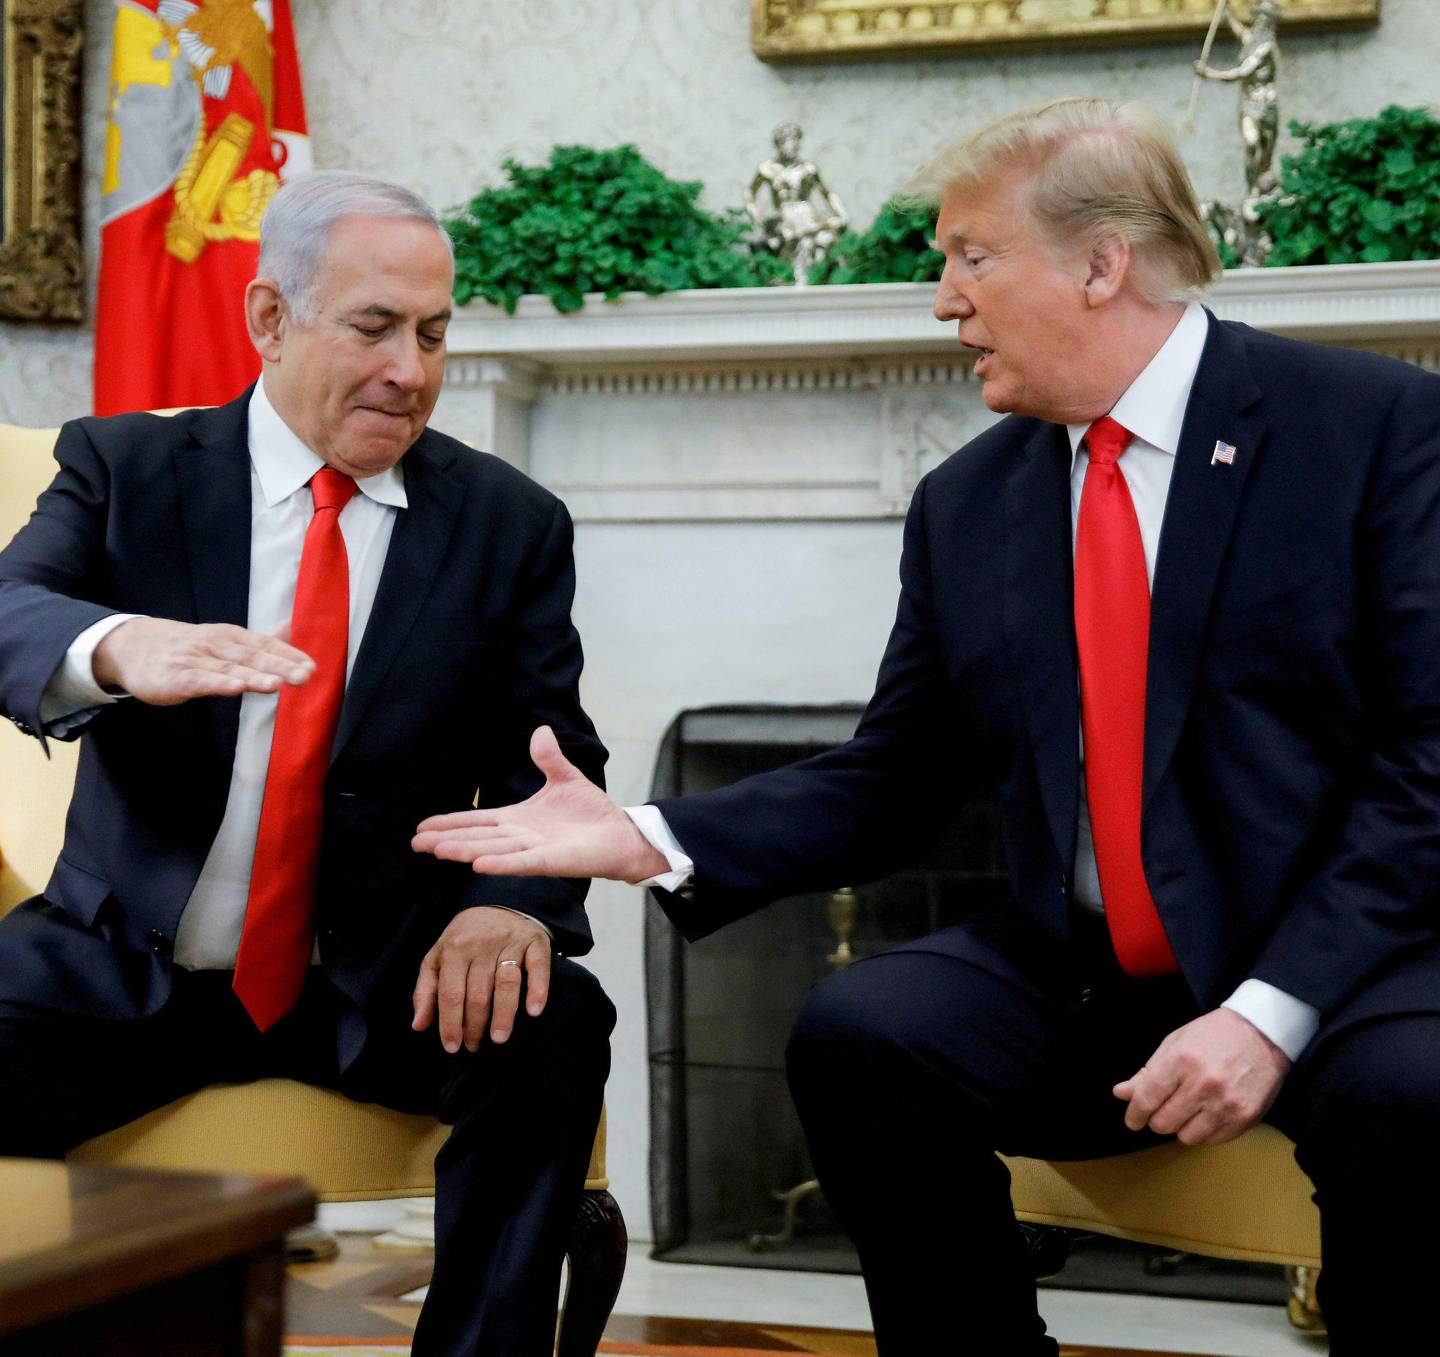 Nære allierte: Donald Trump og Benjamin Netanyahu er nære allierte. Her fra et møte i Det hvite hus i mars i år. FOTO: NTB SCANPIX